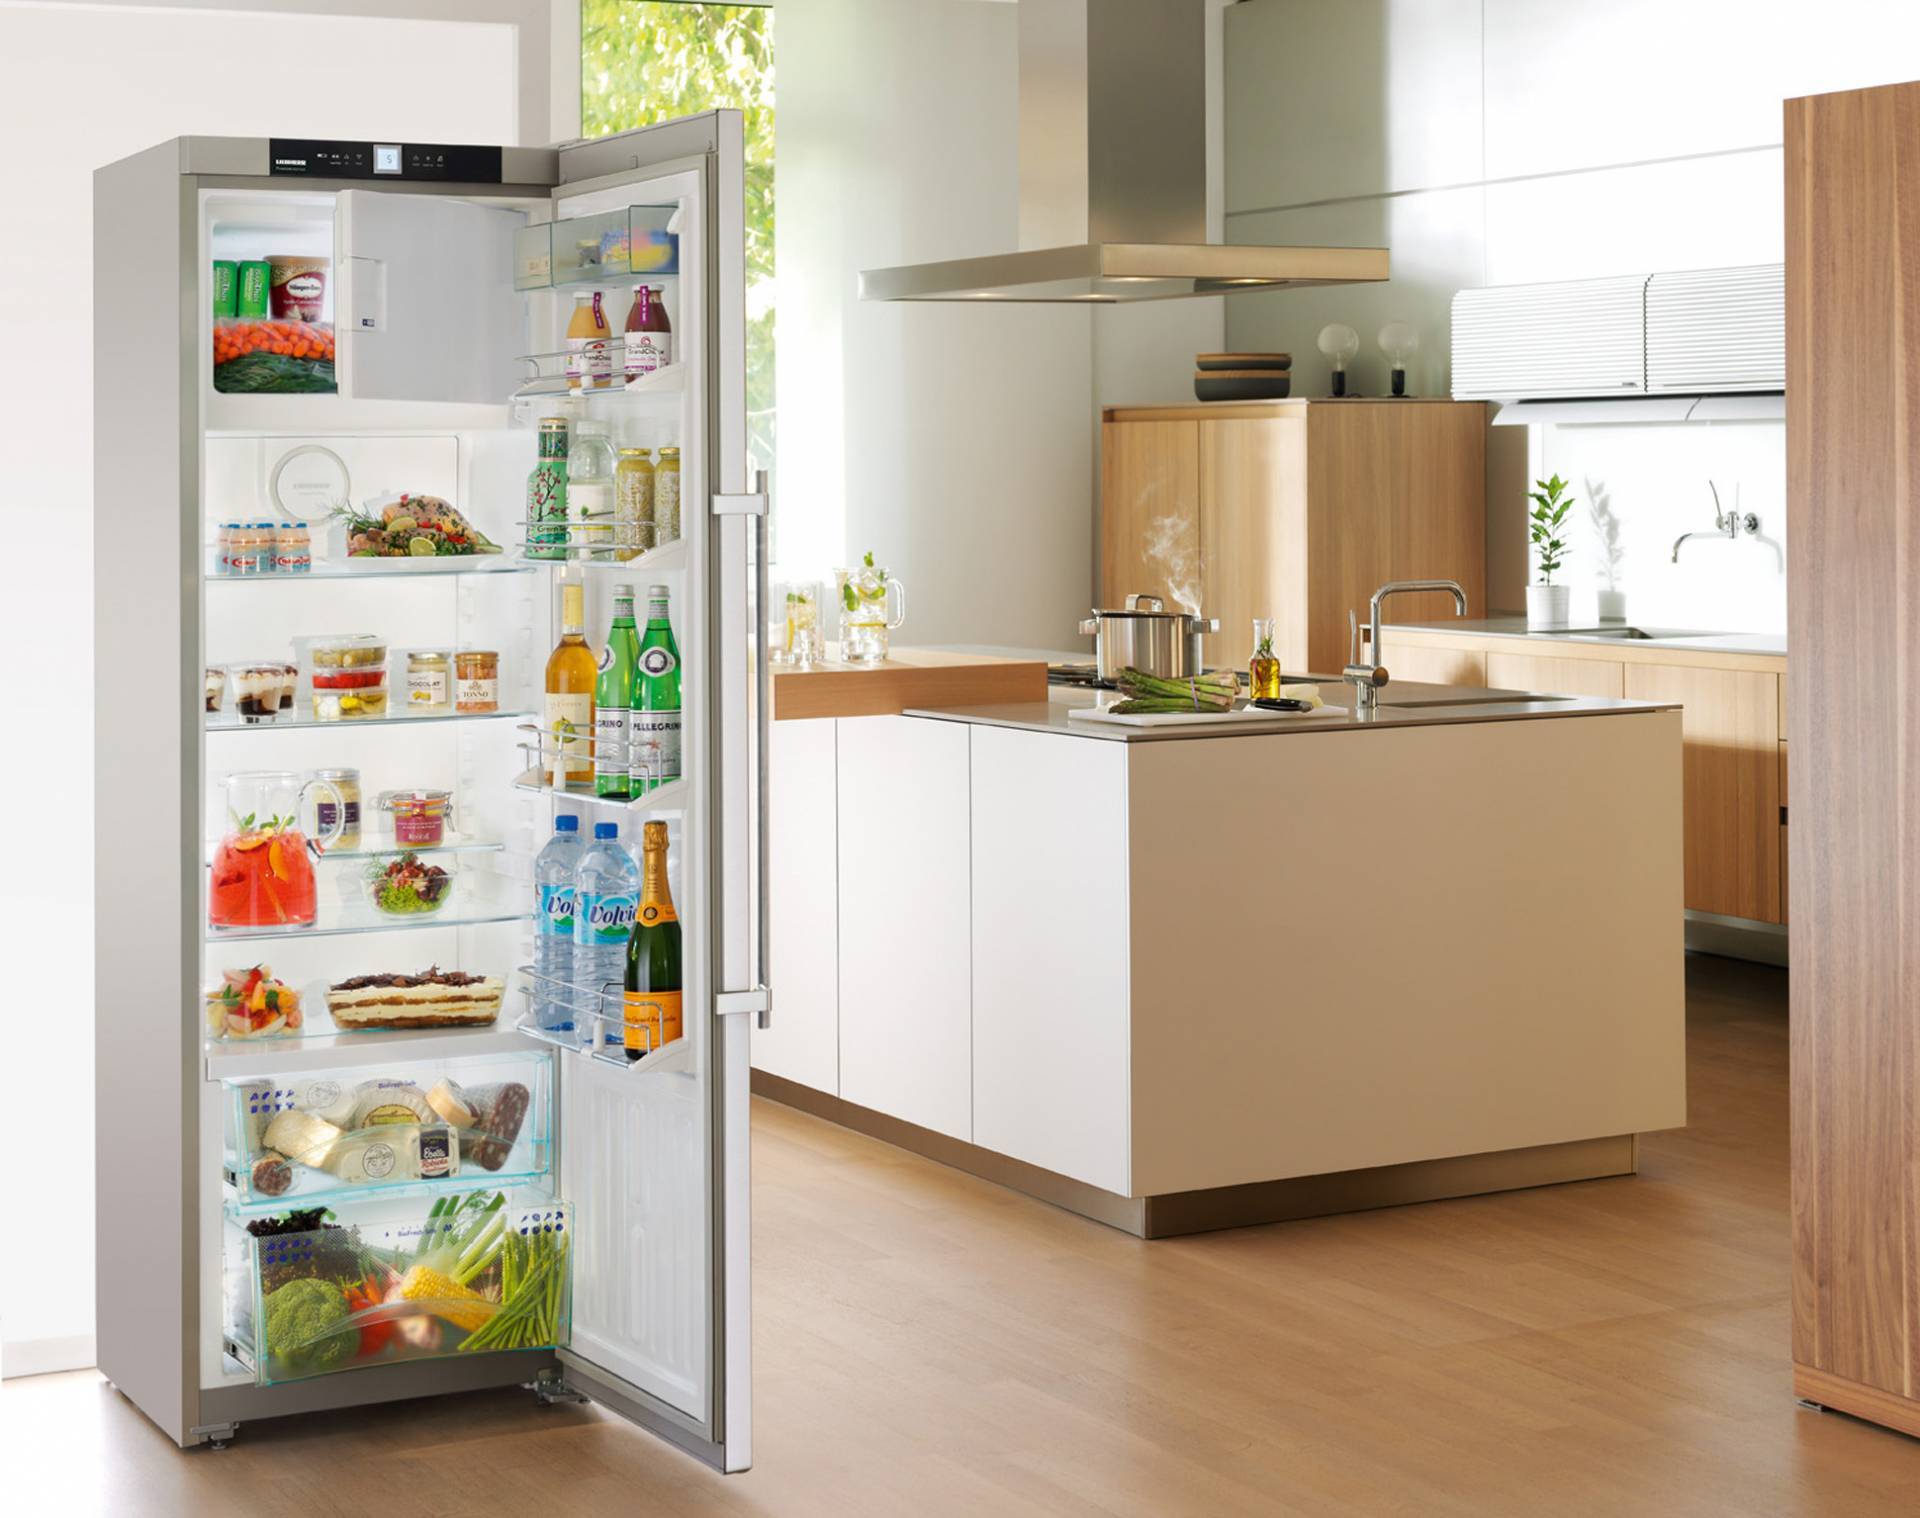 Самые надежные и качественные холодильники. Холодильник. Бытовые холодильники. Красивый холодильник. Холодильник качественный и недорогой.